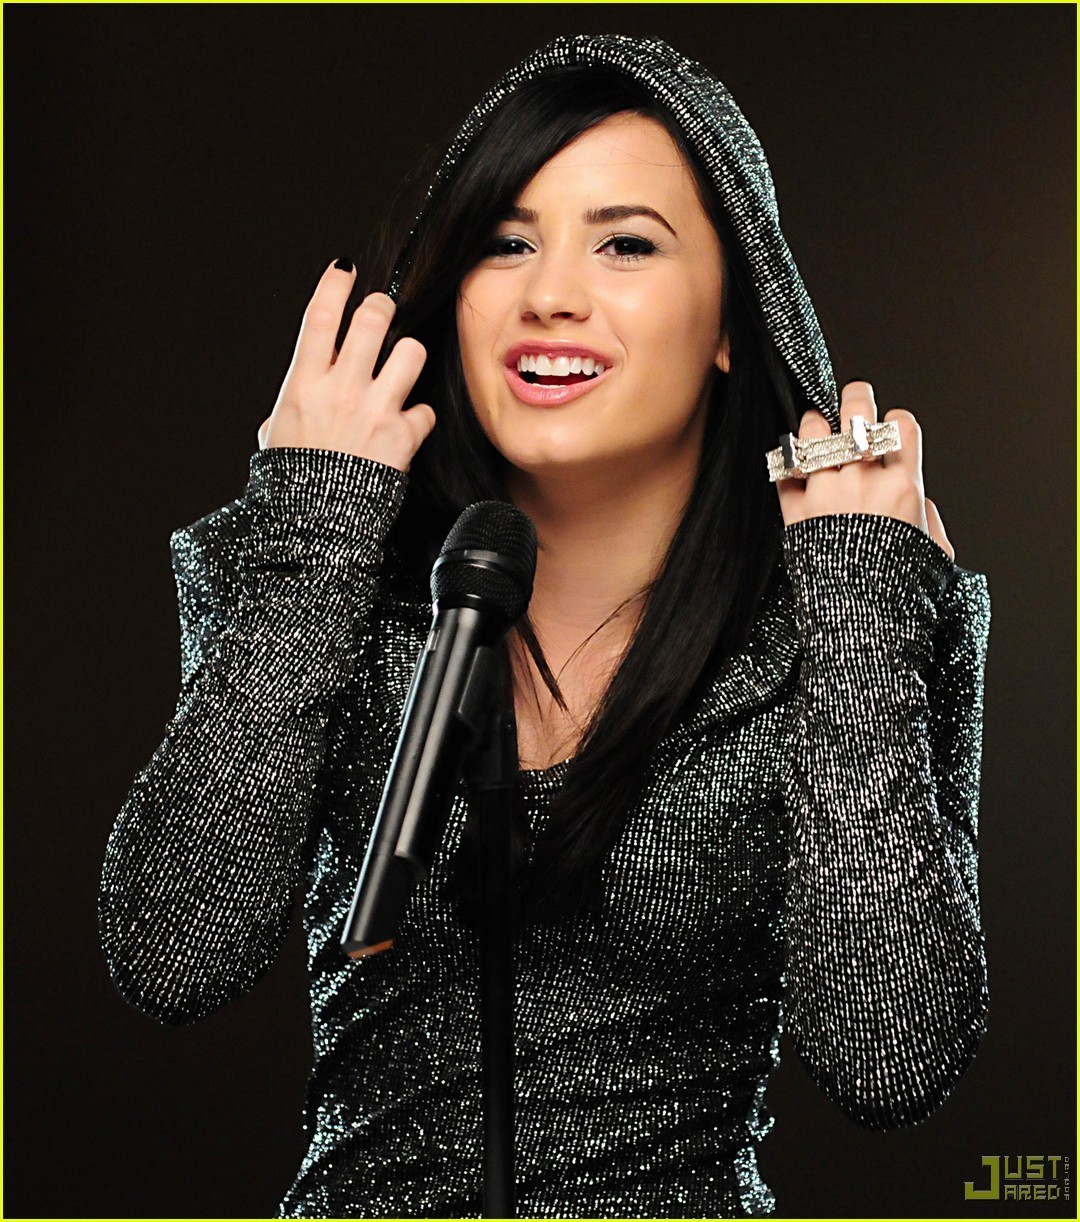 Demi+Lovato-wallpaperhere-2012.blogspot.com-Demi-Lovato-demi-lovato ...